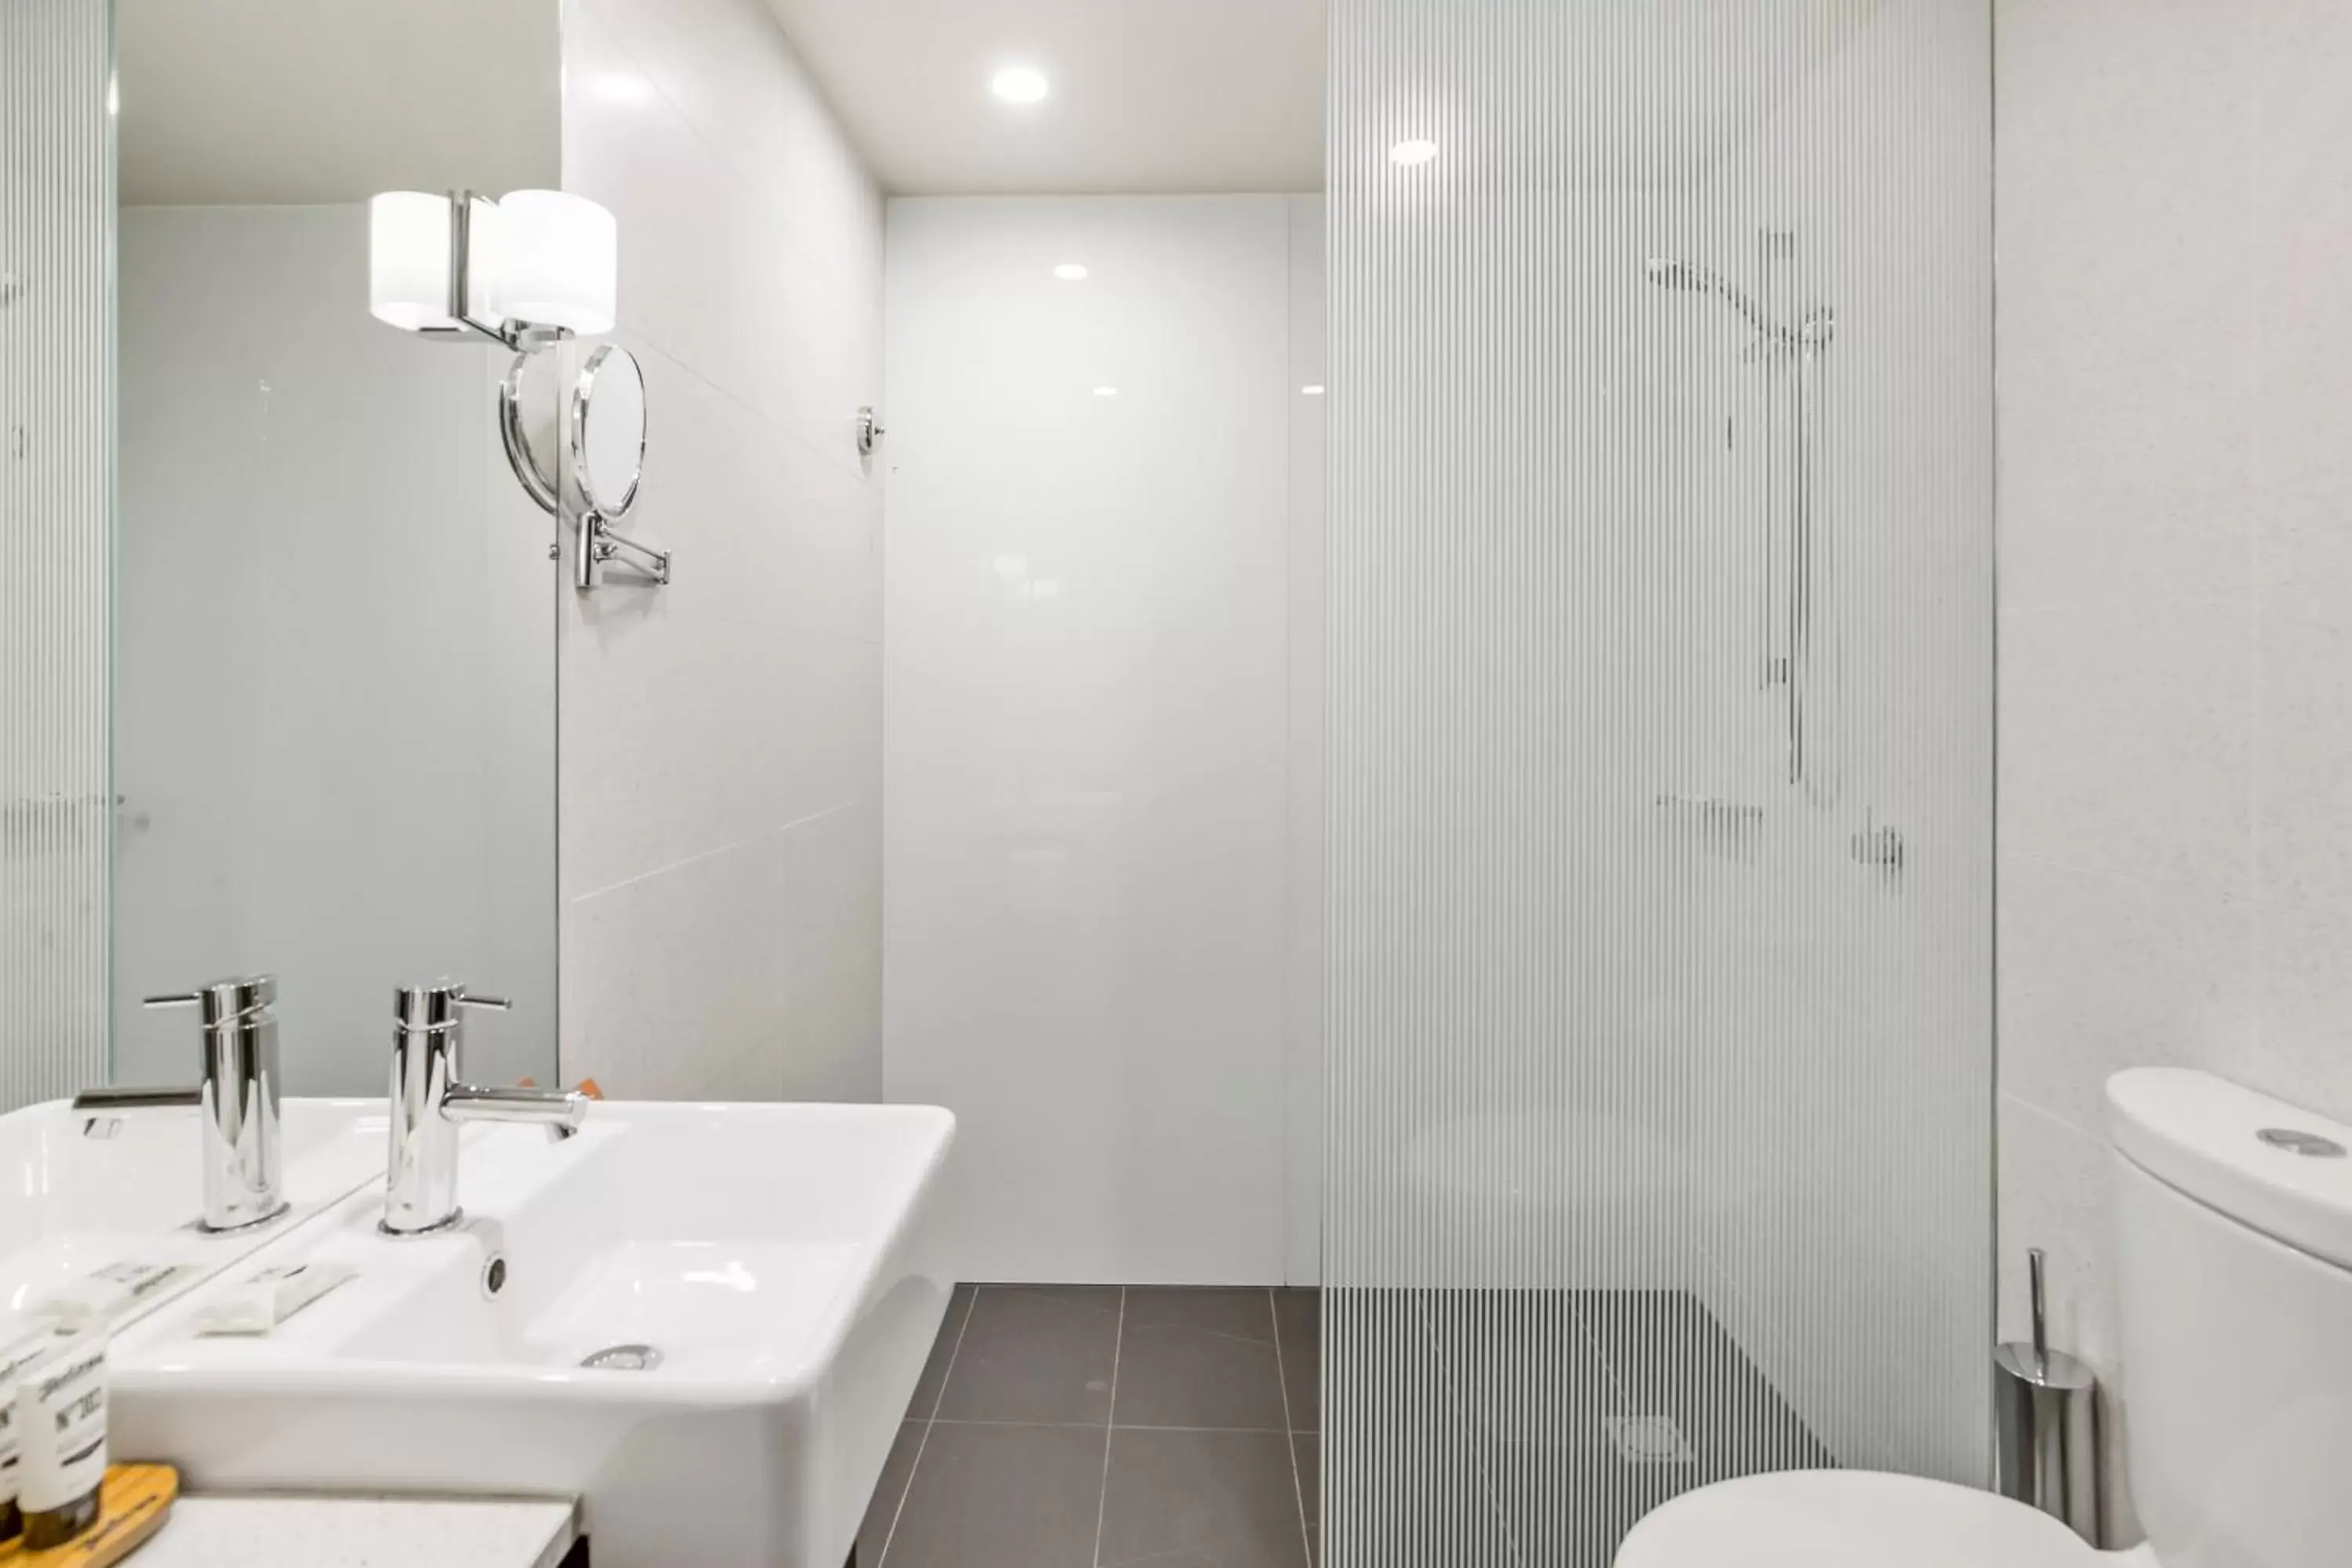 Bathroom in RACV Hobart Hotel